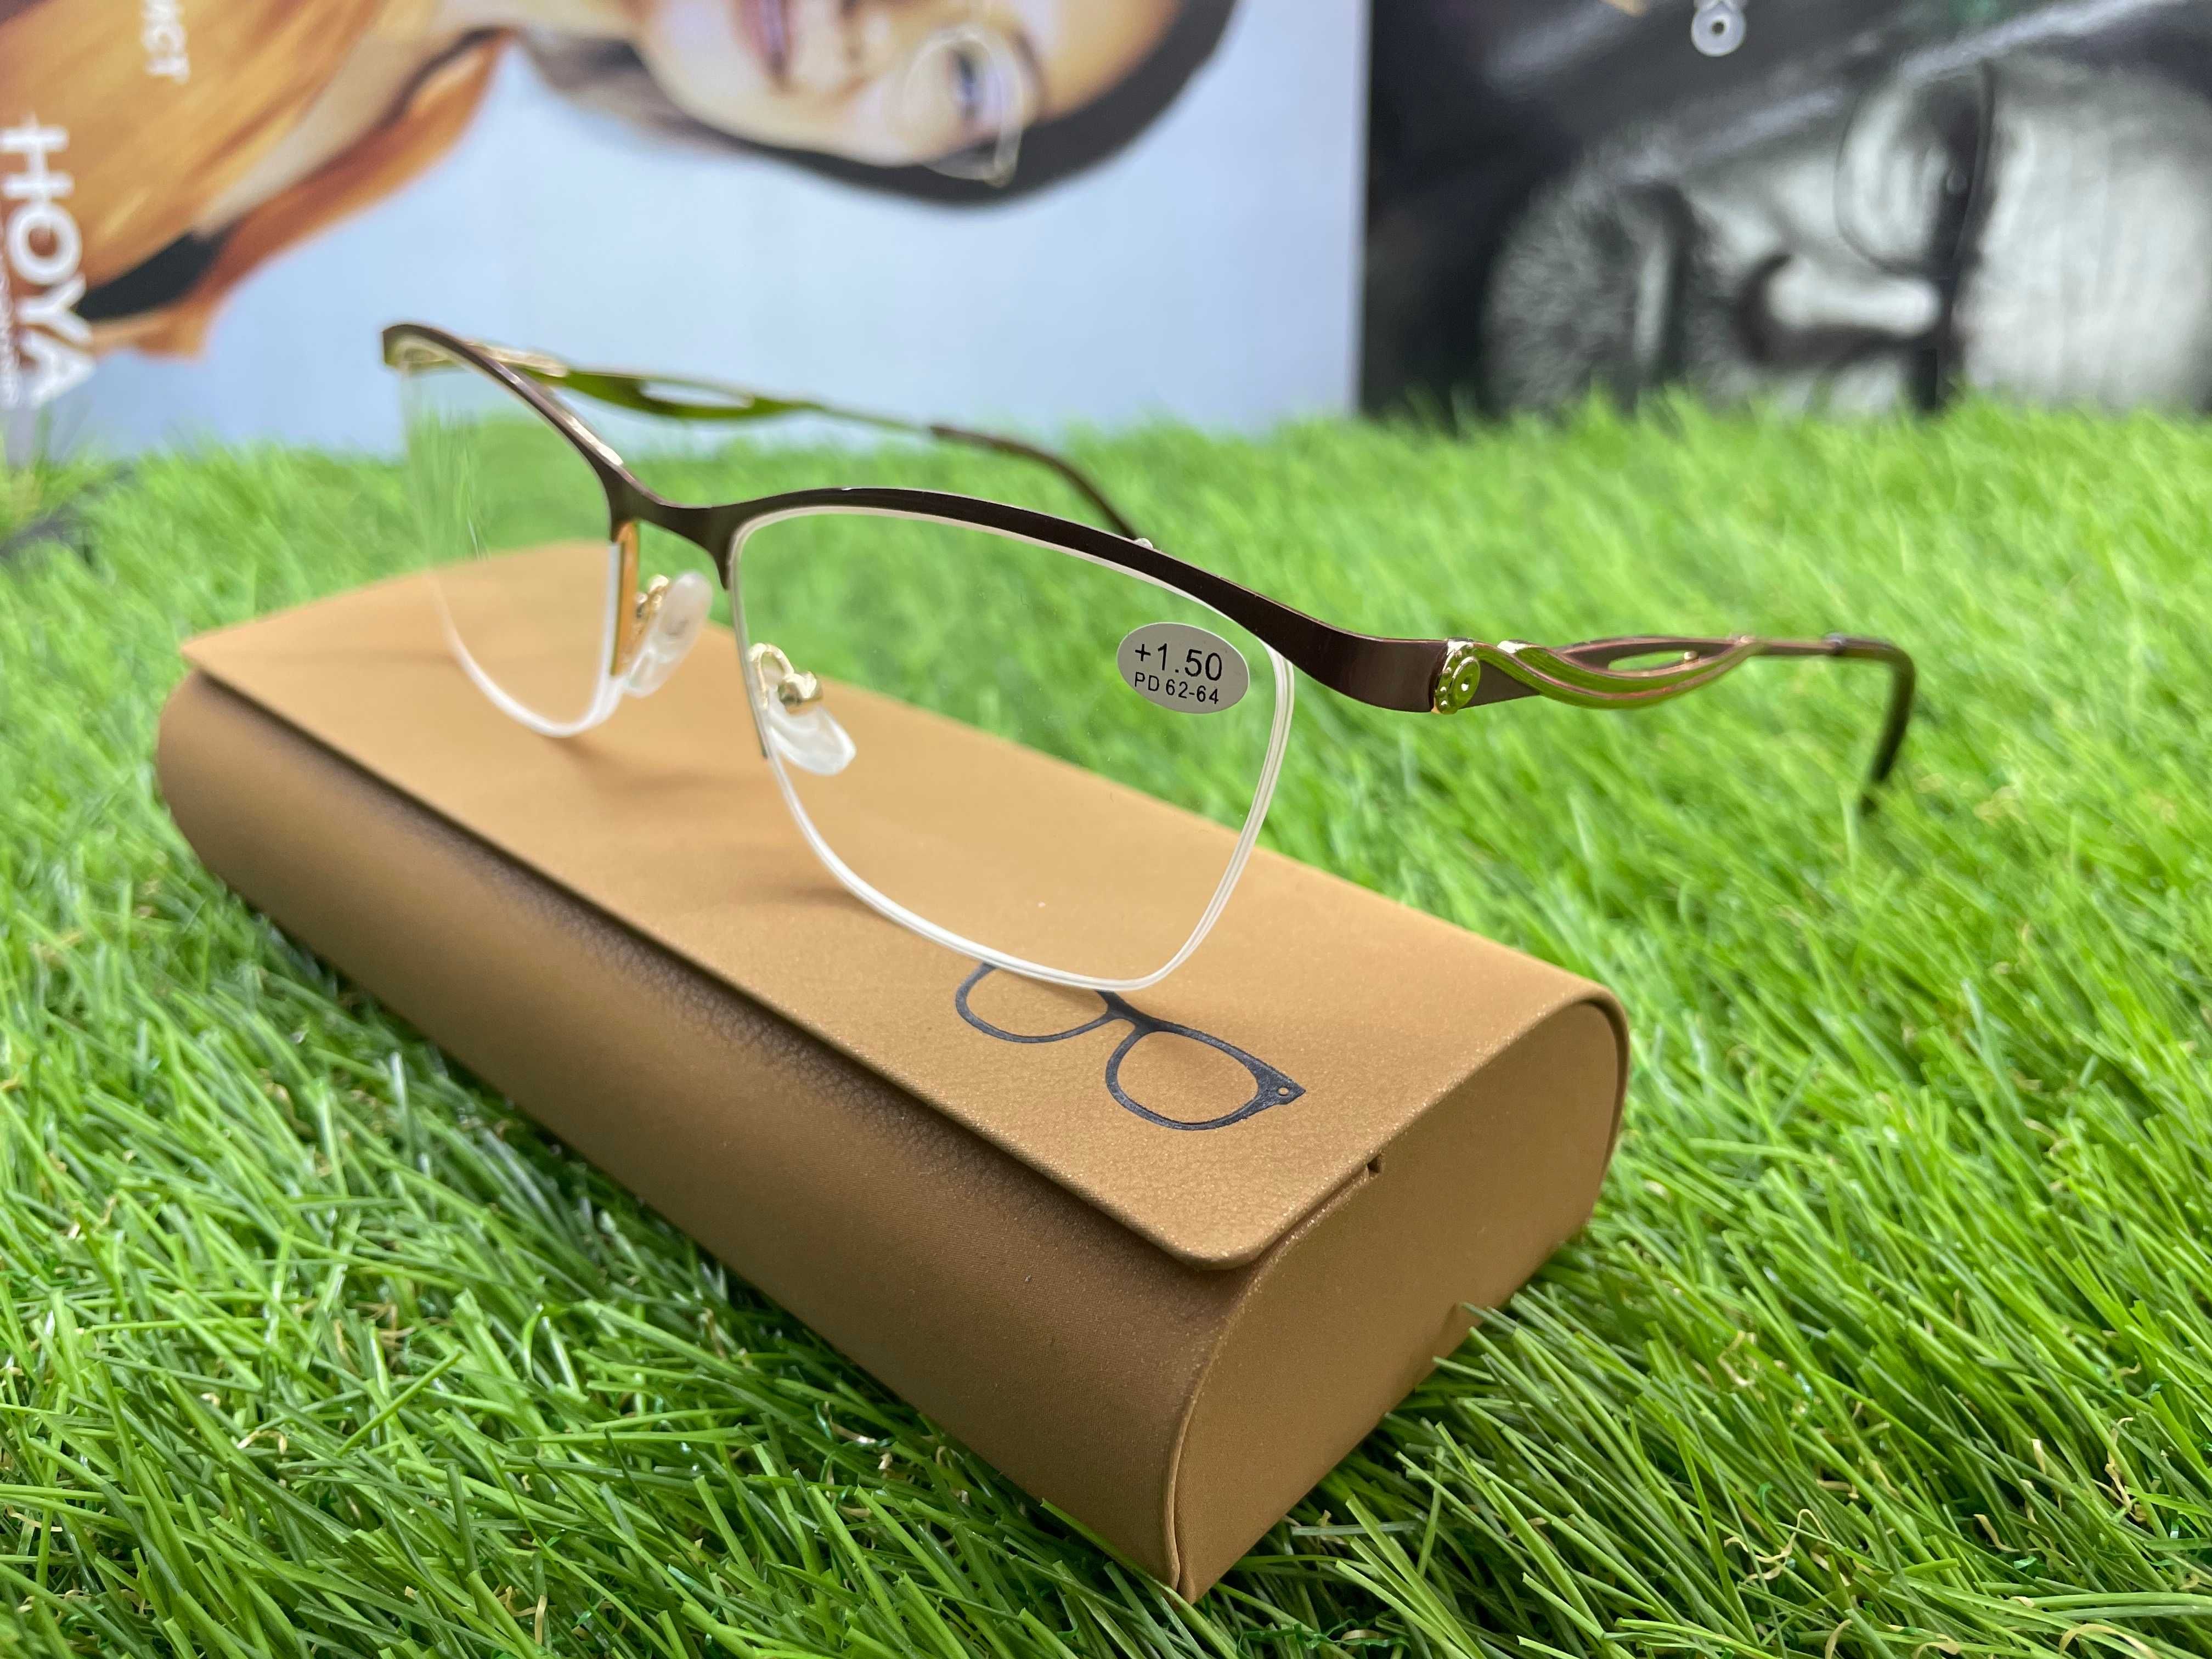 Жіночі окуляри/Женские очки/Очки для зрения/Окуляри для зору